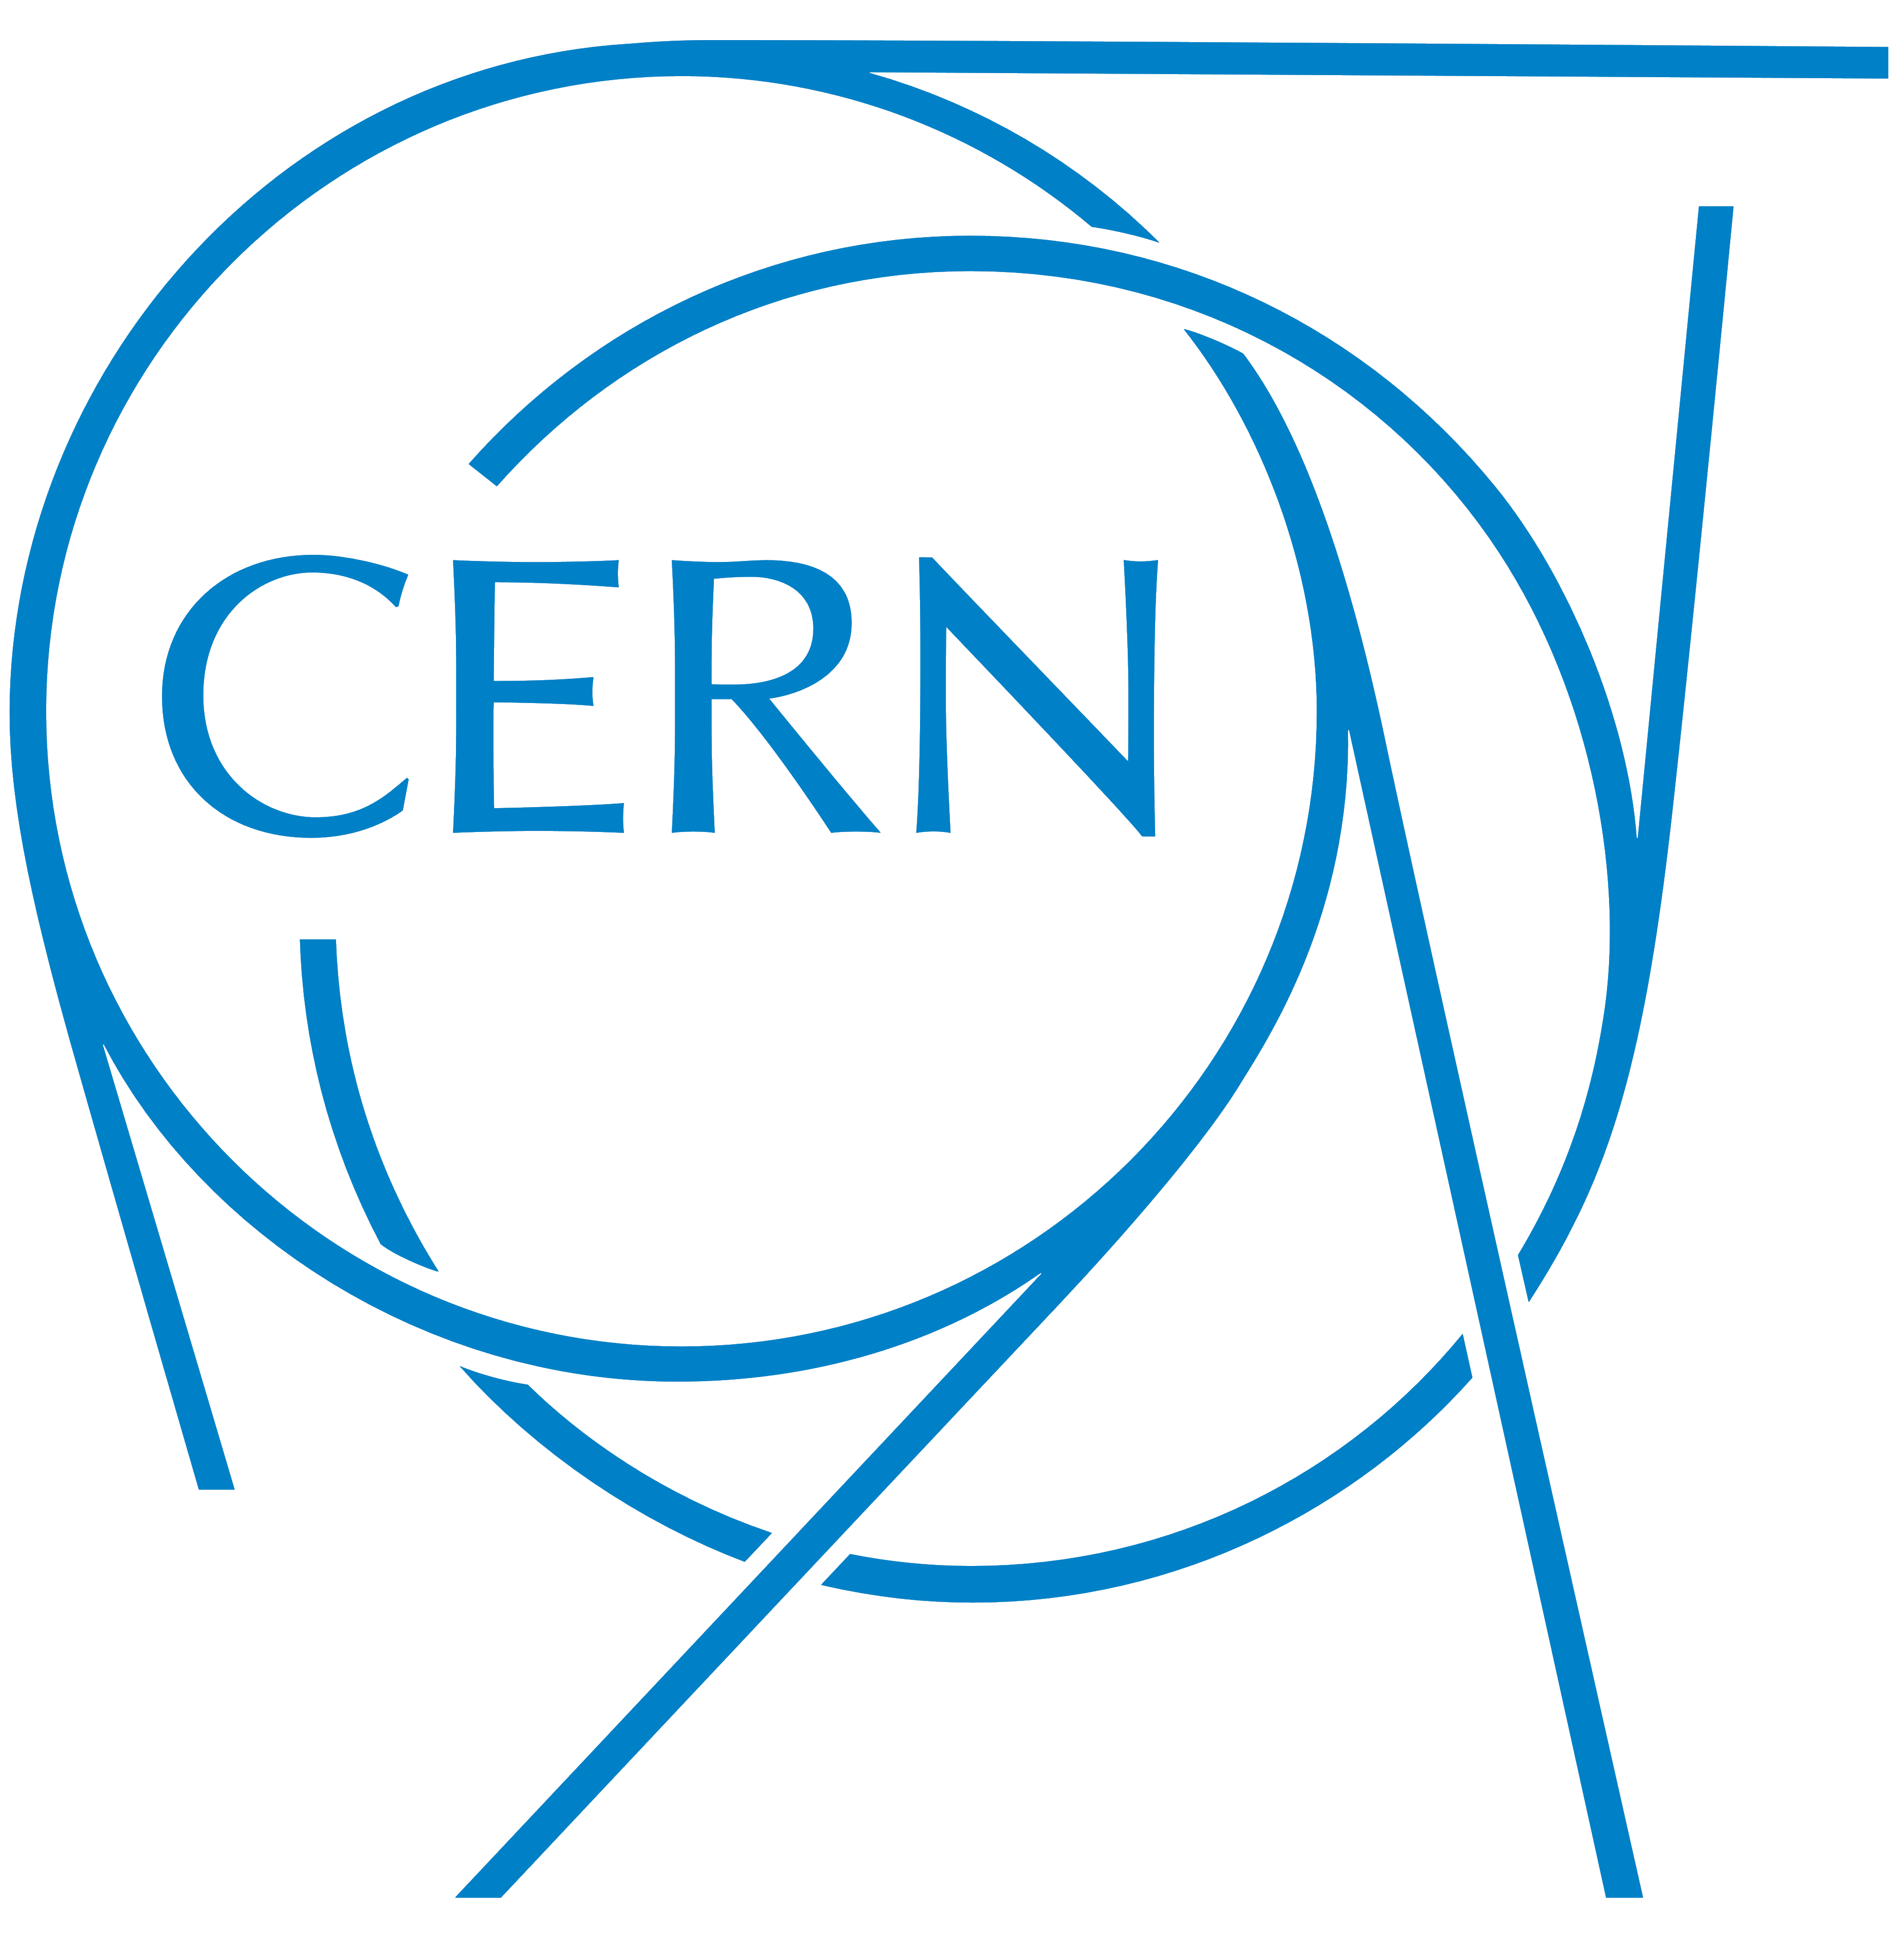 CERN_logo.png